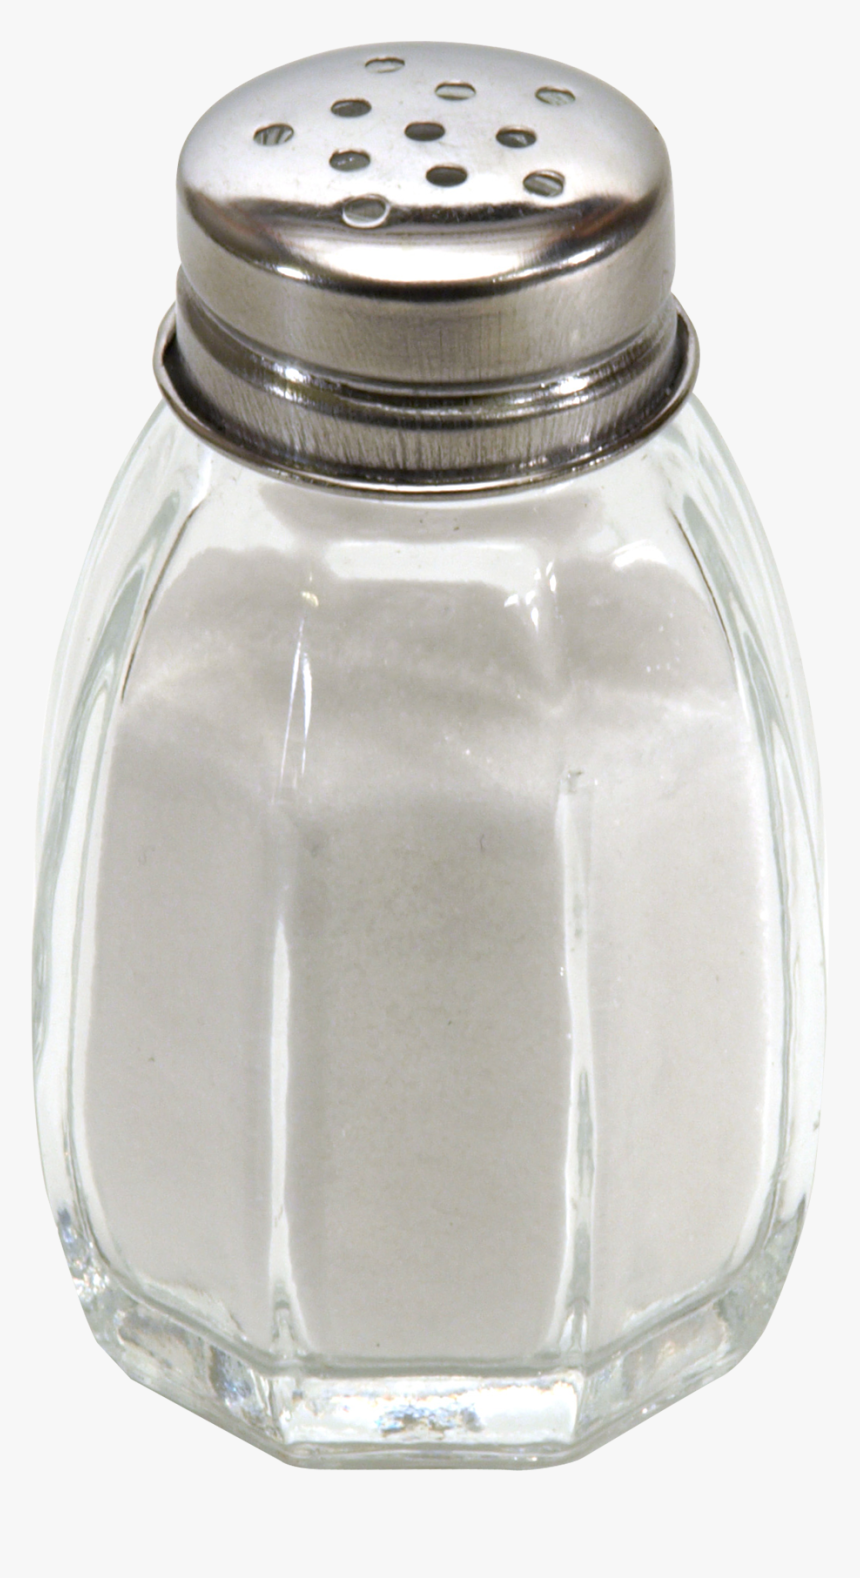 Salt Png - Salt Shaker Png, Transparent Png, Free Download